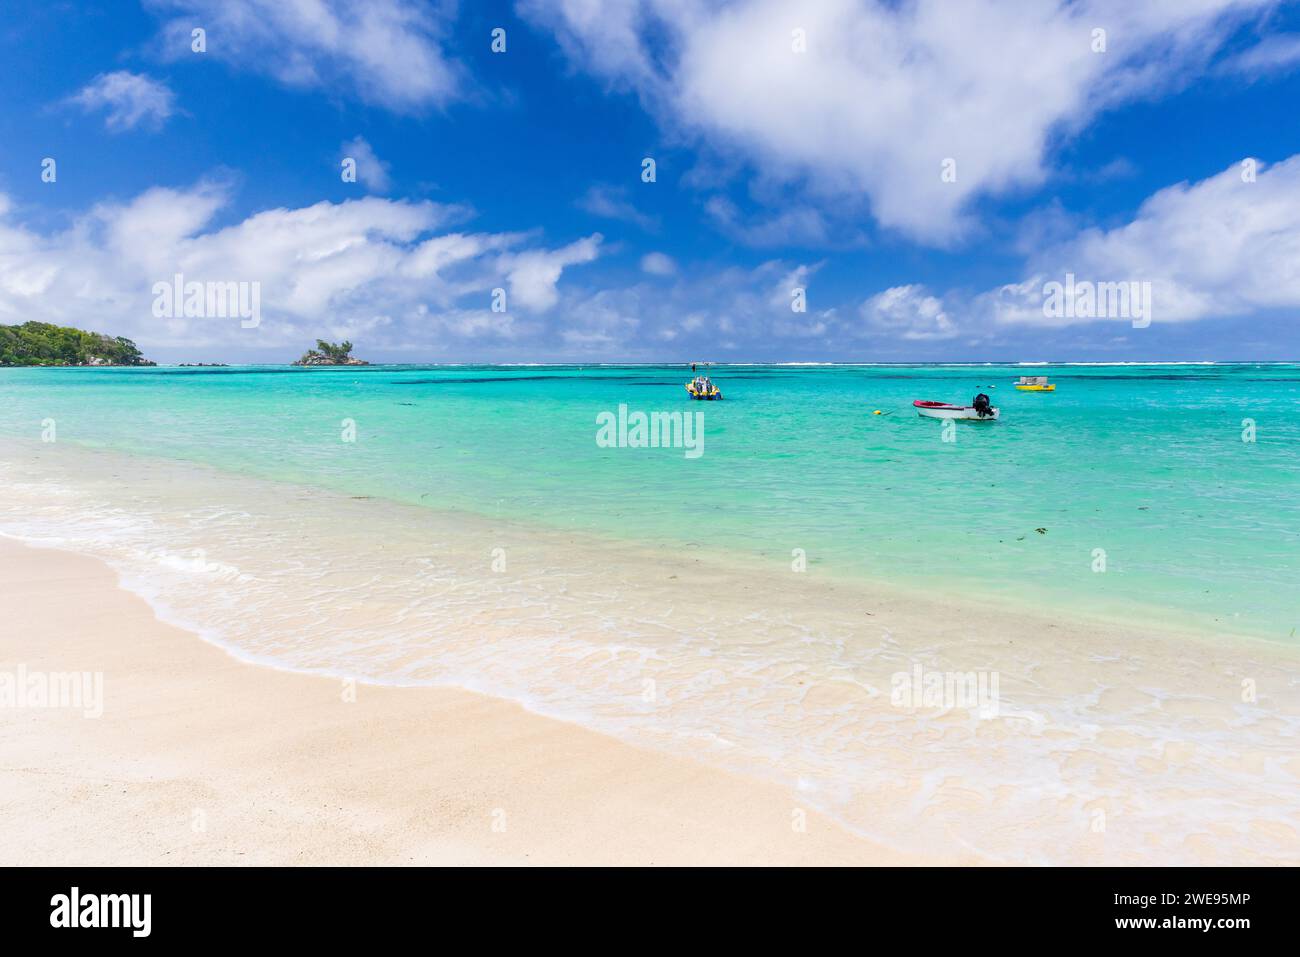 Plage d'Anse Royale, Seychelles. Vue côtière avec de petits bateaux à moteur sous ciel bleu avec des nuages blancs par une journée ensoleillée Banque D'Images